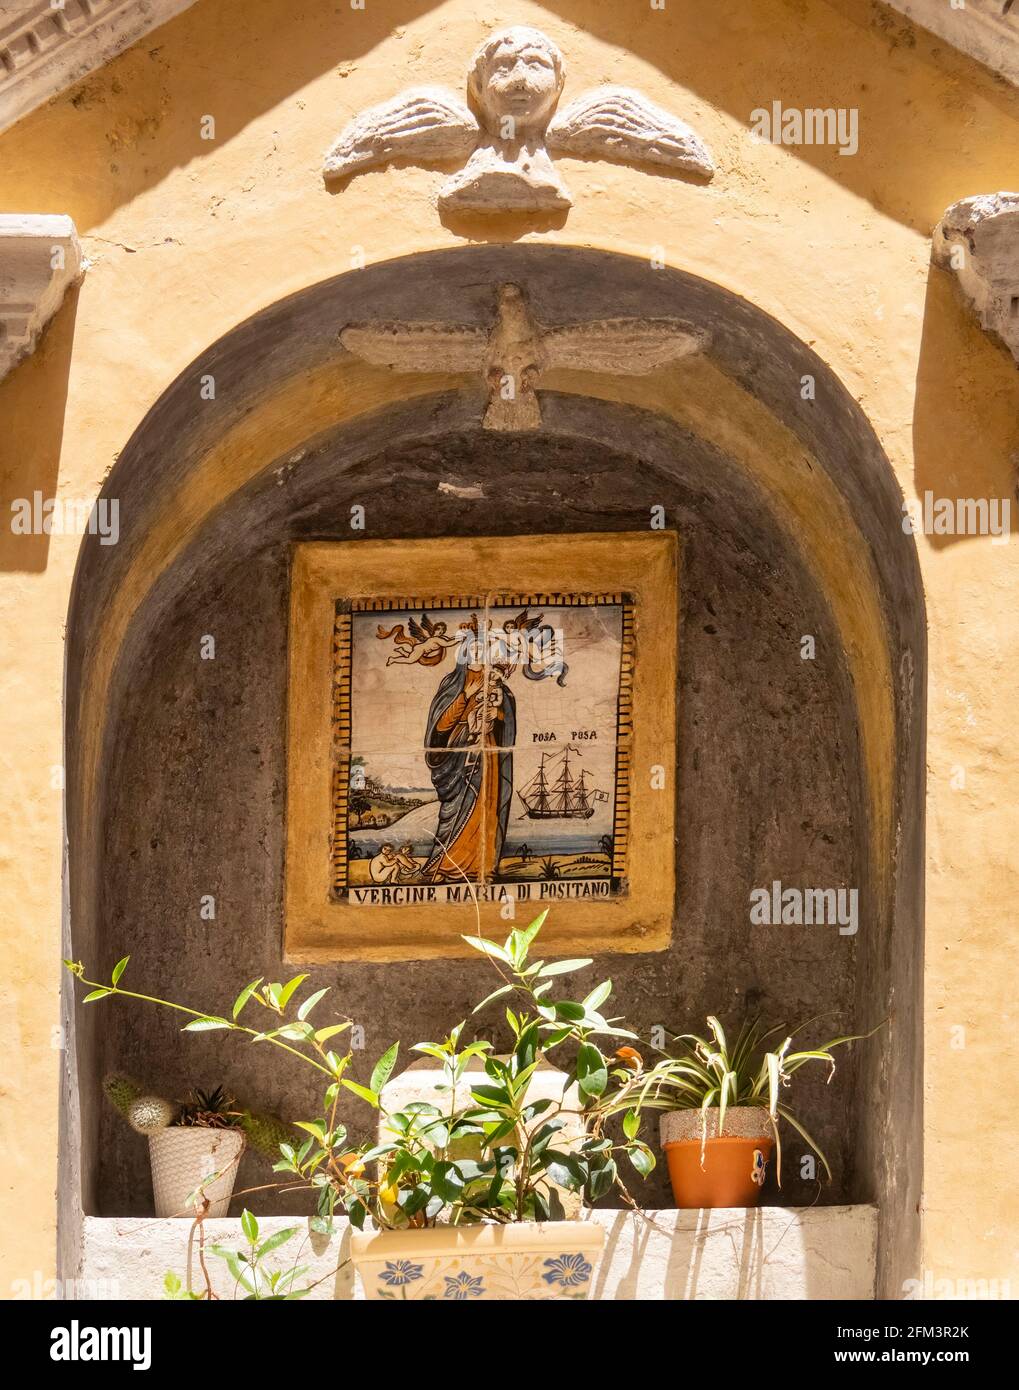 POSITANO, ITALIE- JUIN 14, 2019: Photo d'une tuile de la vierge marie de positano exposée dans une niche sur la côte amalfitaine Banque D'Images